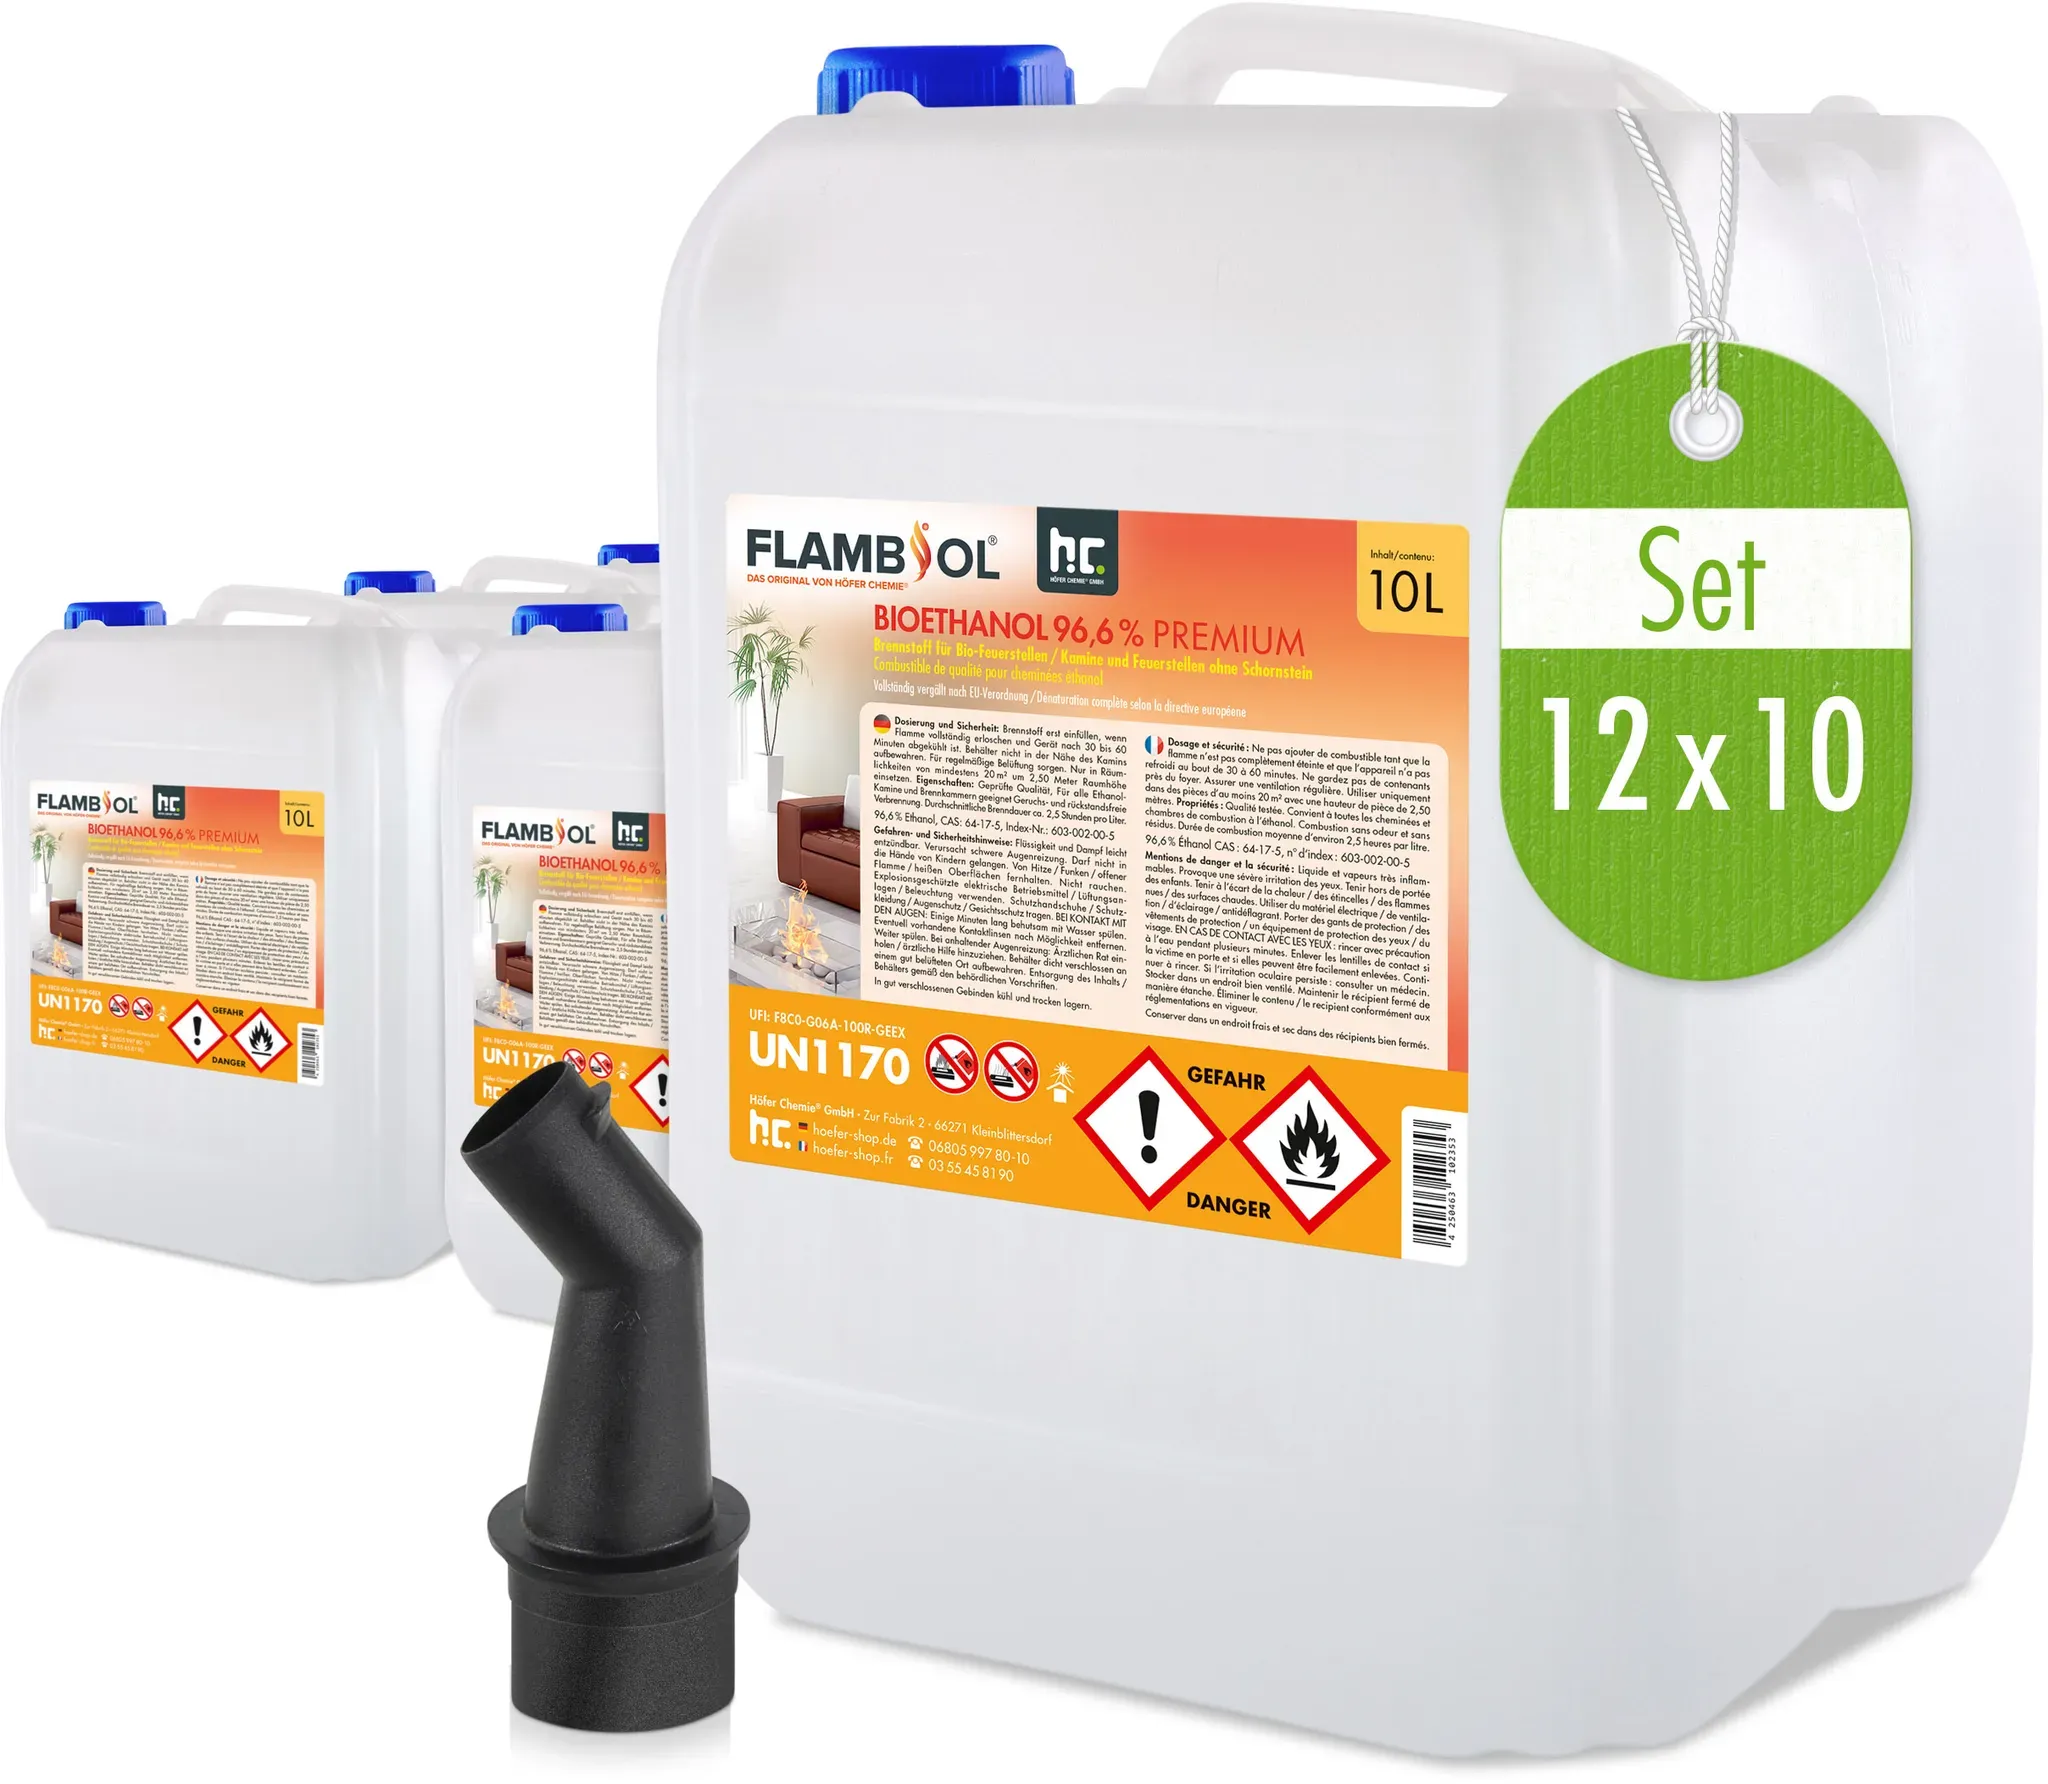 12 x 10 L FLAMBIOL® Bioéthanol 96,6% Premium pour cheminée à éthanol en bidons